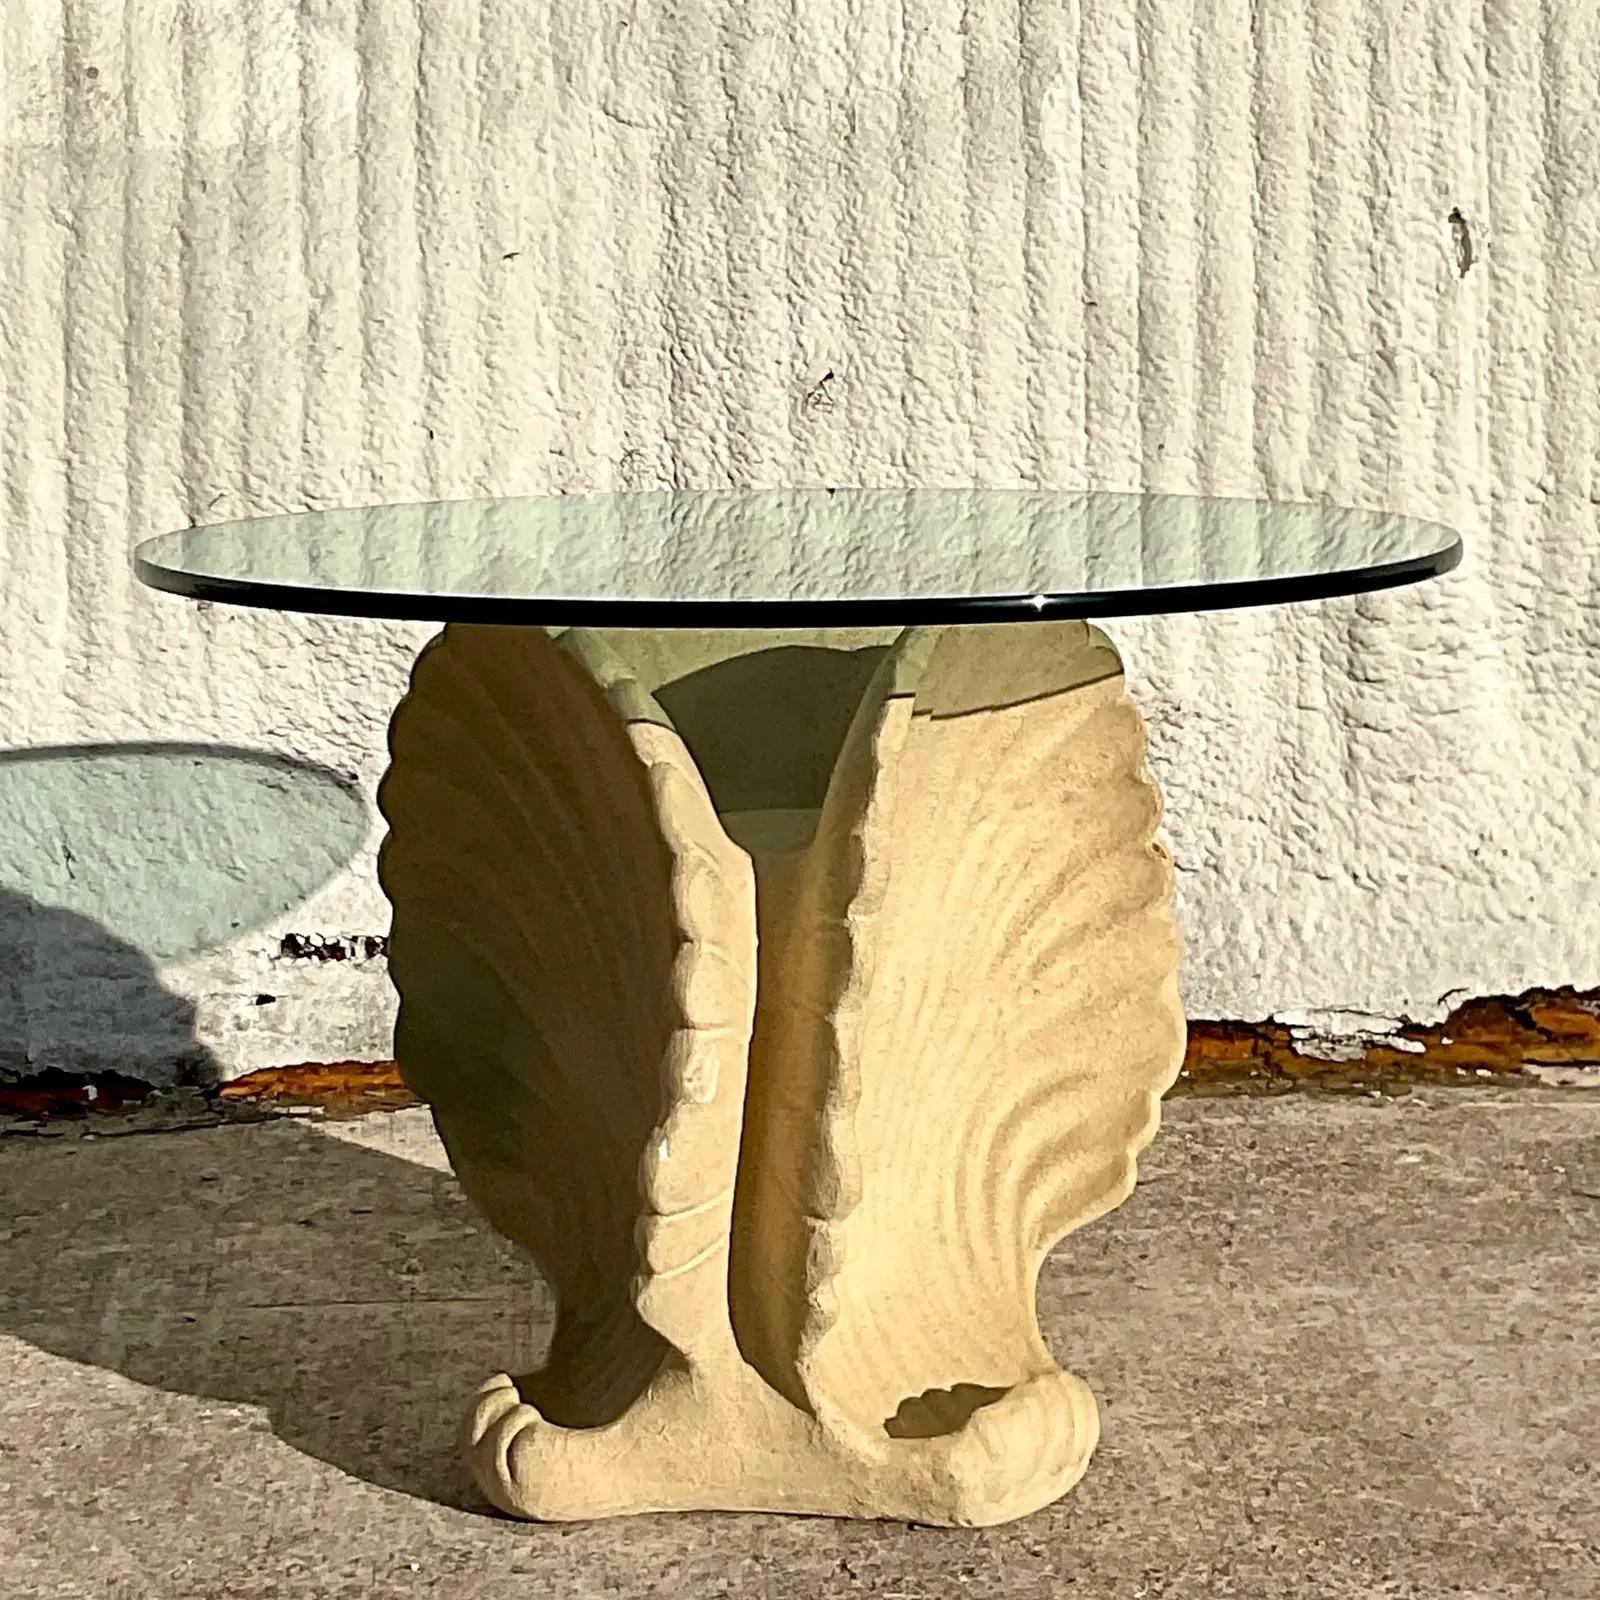 Ein fabelhafter Esstisch aus Küstengips im Vintage-Stil. Schönes dreifaches Muscheldesign mit einer dicken Glasplatte. Perfekt als kleiner Esstisch oder als prächtiger Tisch für die Eingangshalle. Sie entscheiden! Erworben aus einem Nachlass in Palm